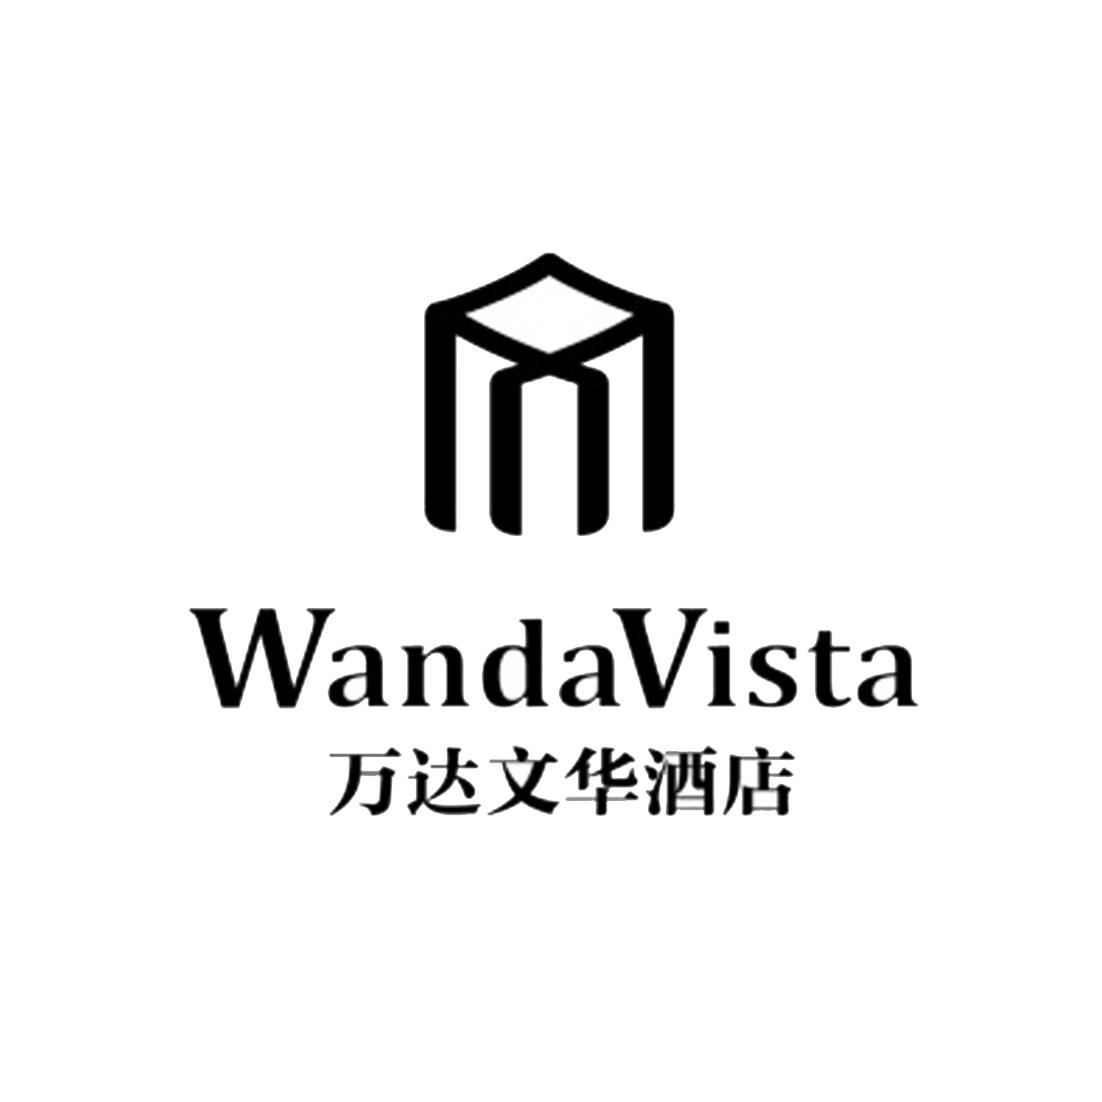 万达文华酒店  wandavista 商标公告